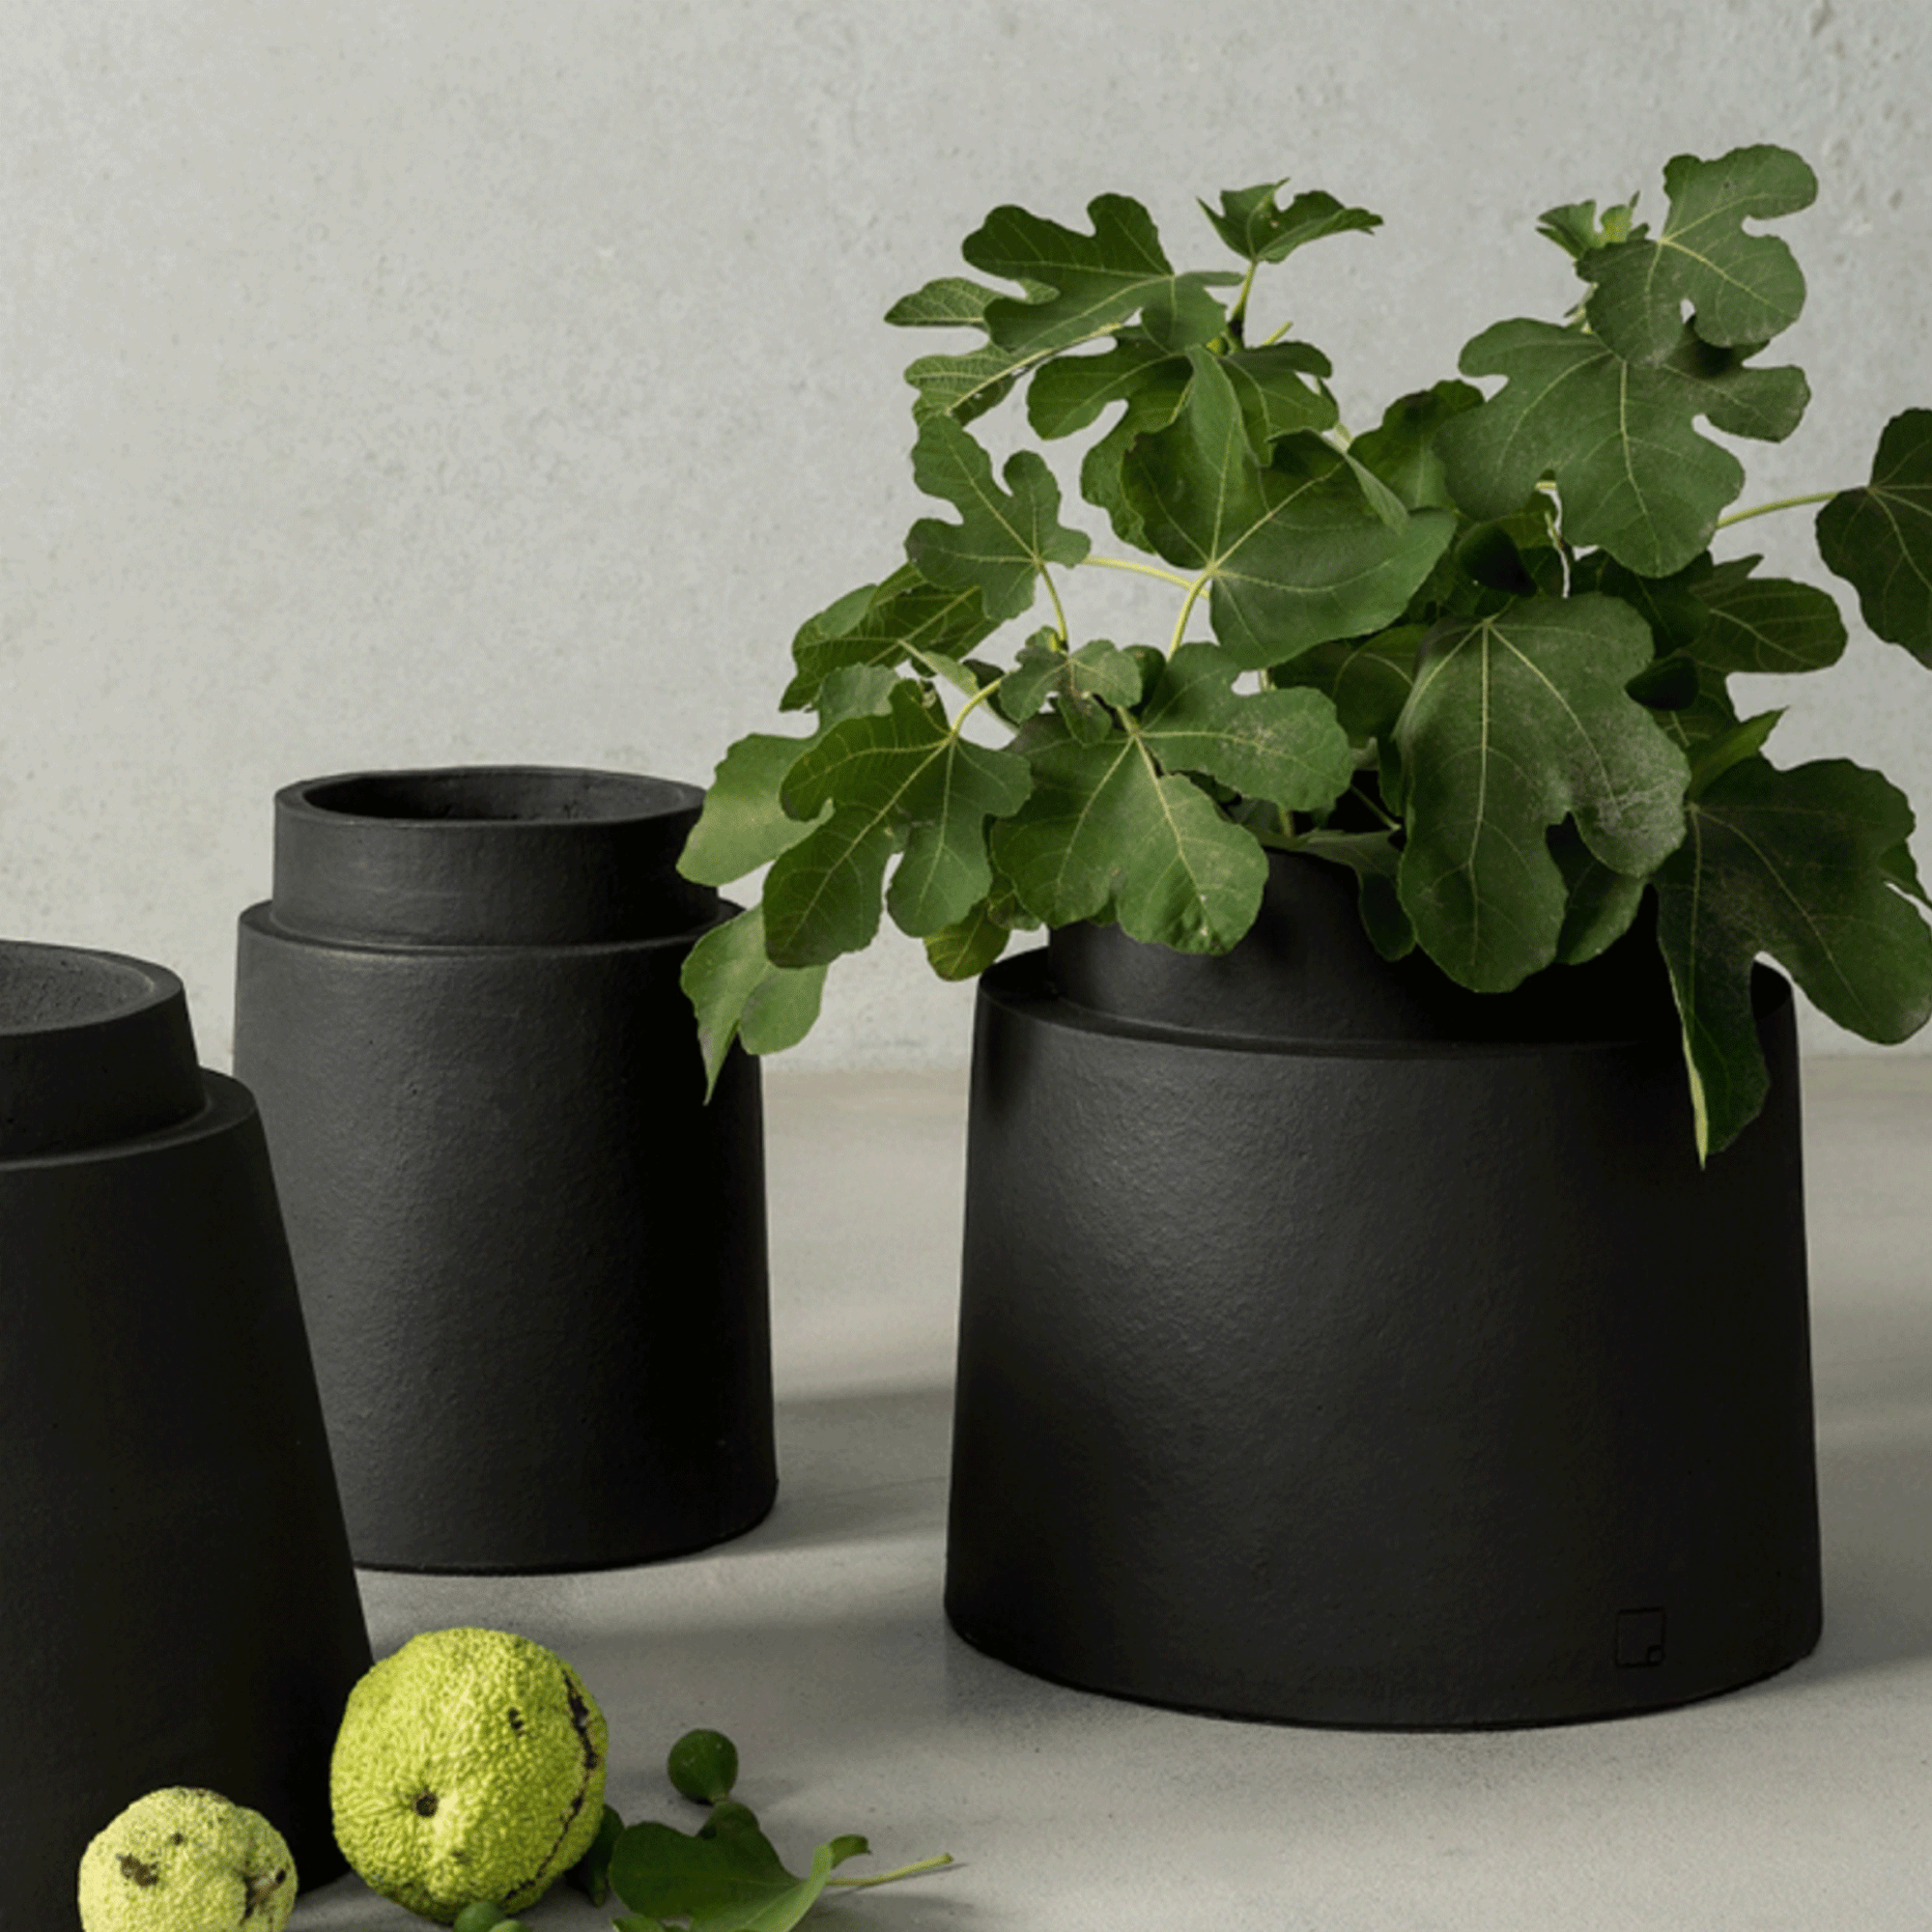 Die neue Atelier Vierkant Collection Ricarda besteht aus 3 Größen. Auf diesem Bild sehen Sie die Gefäße GRS40 mit einer grünen Pflanzen sowie die Vase GS. Im Vordergrund sehen Sie 2 hellgrüne Früchte